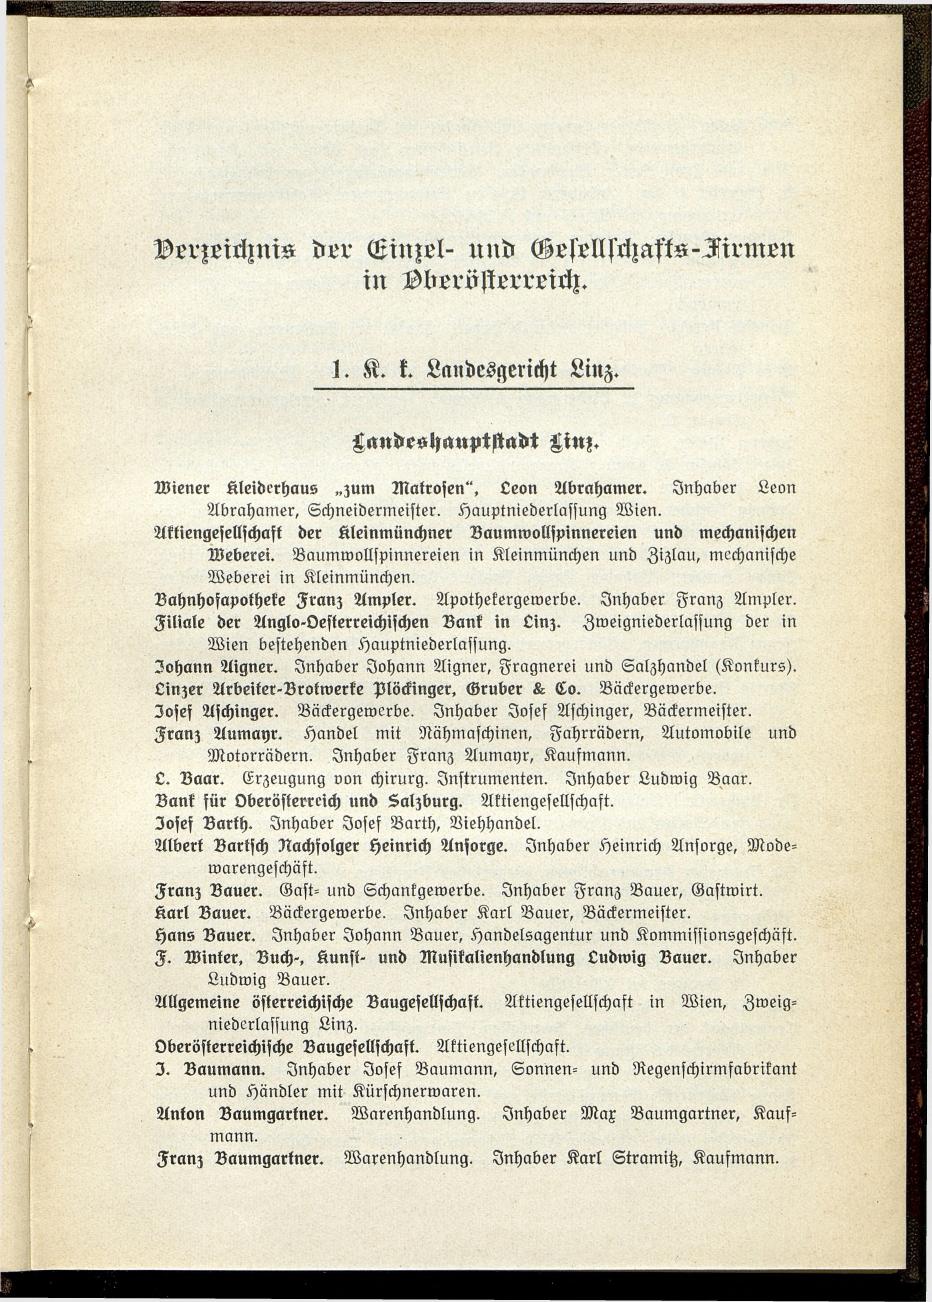 Verzeichnis der handelsgerichtlich protokollierten Firmen sowie der registrierten Erwerbs- und Wirtschafts-Genossenschaften in Oberösterreich 1914 - Seite 7